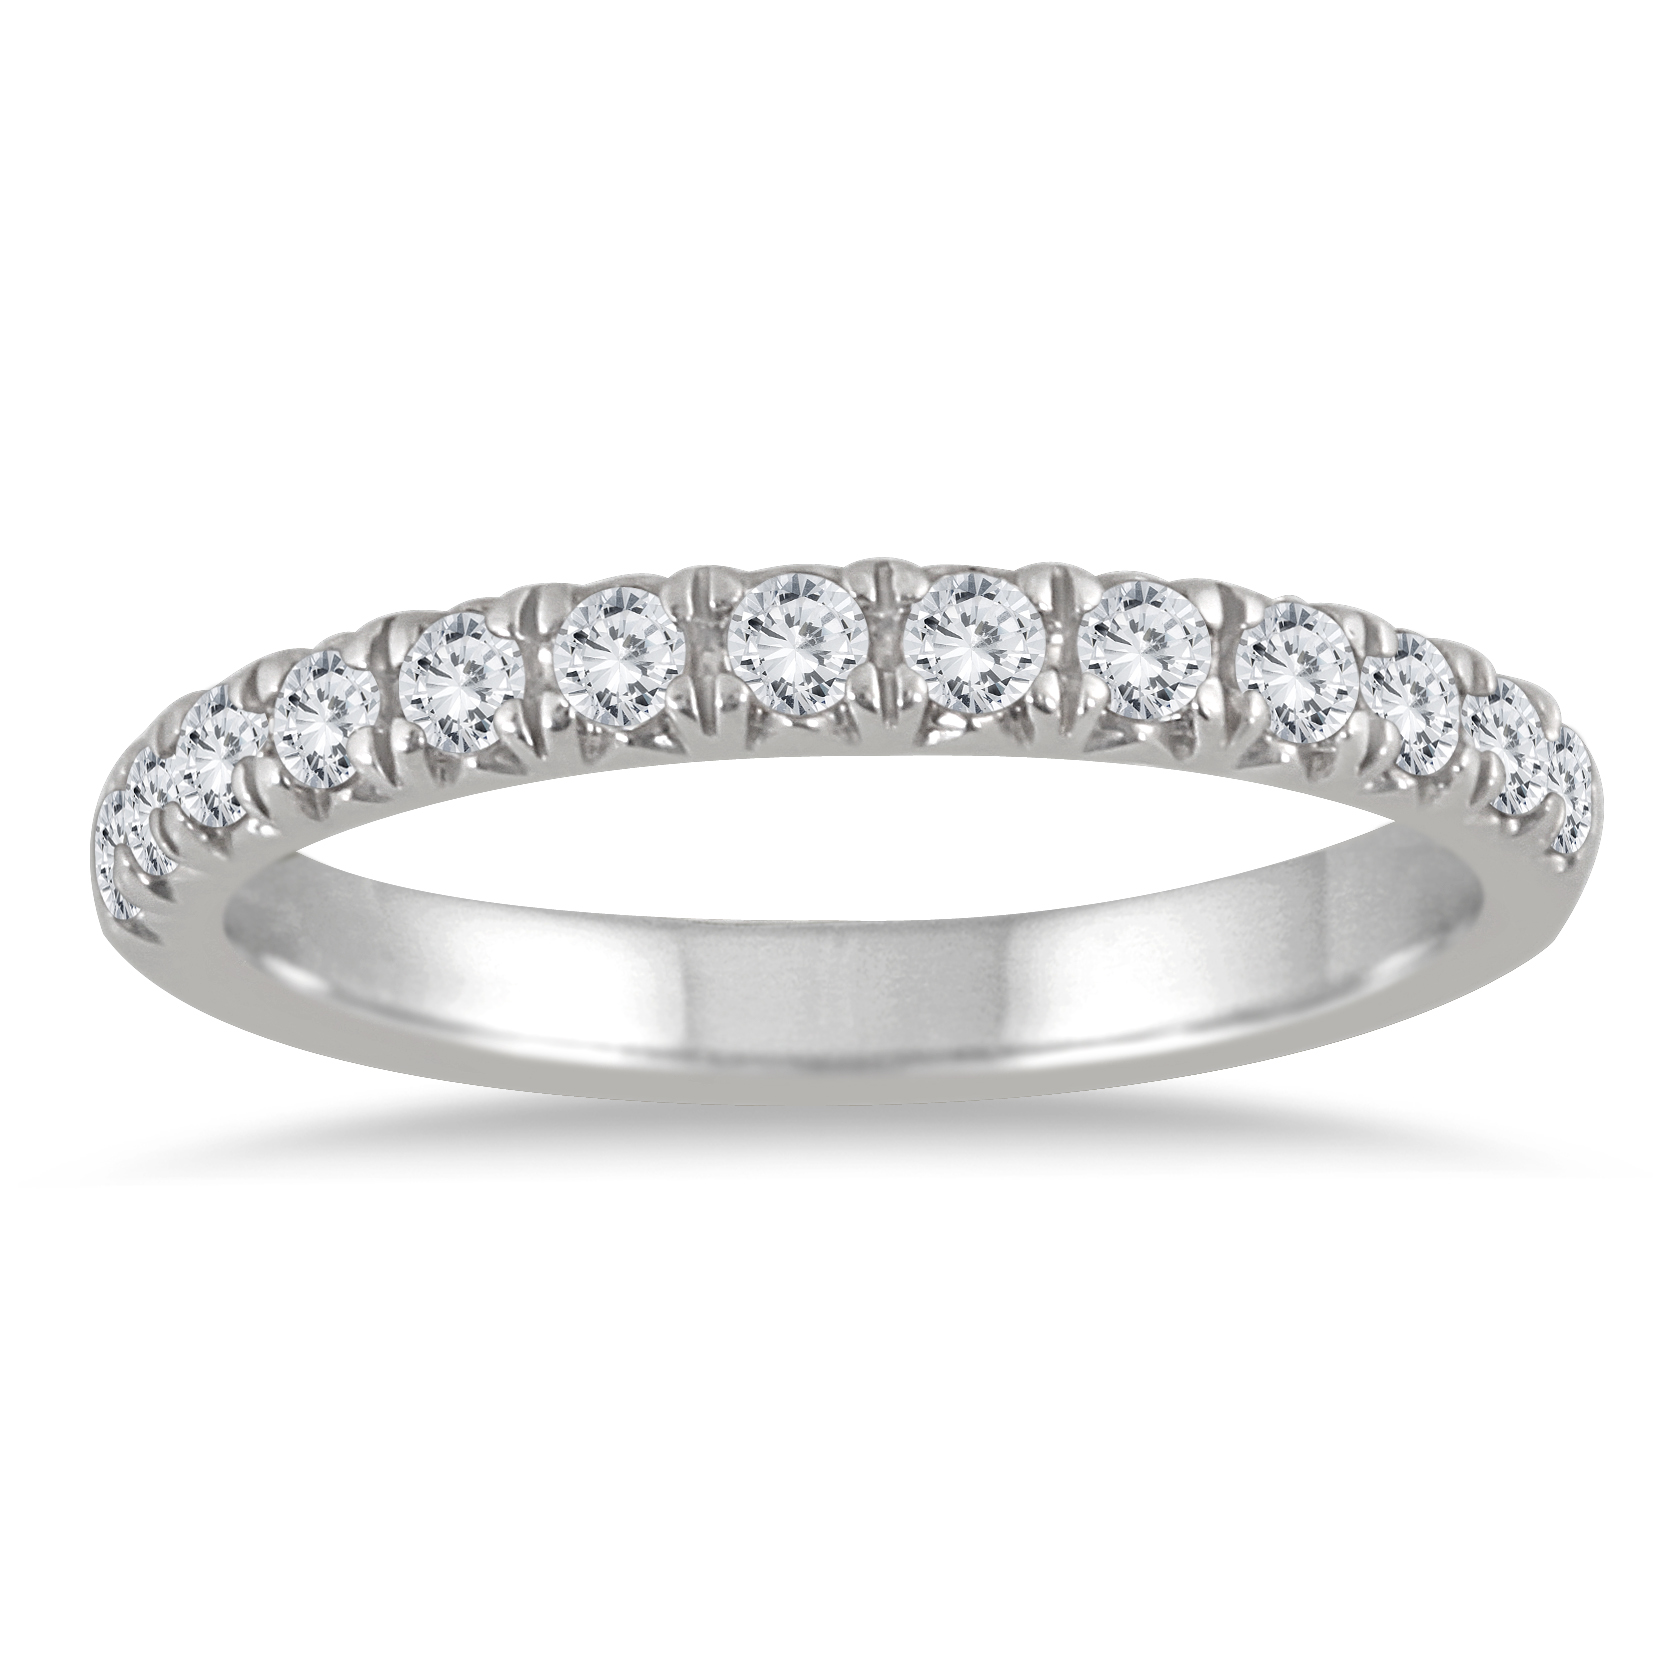 3/8 Carat TW Diamond Ring in 14K White Gold